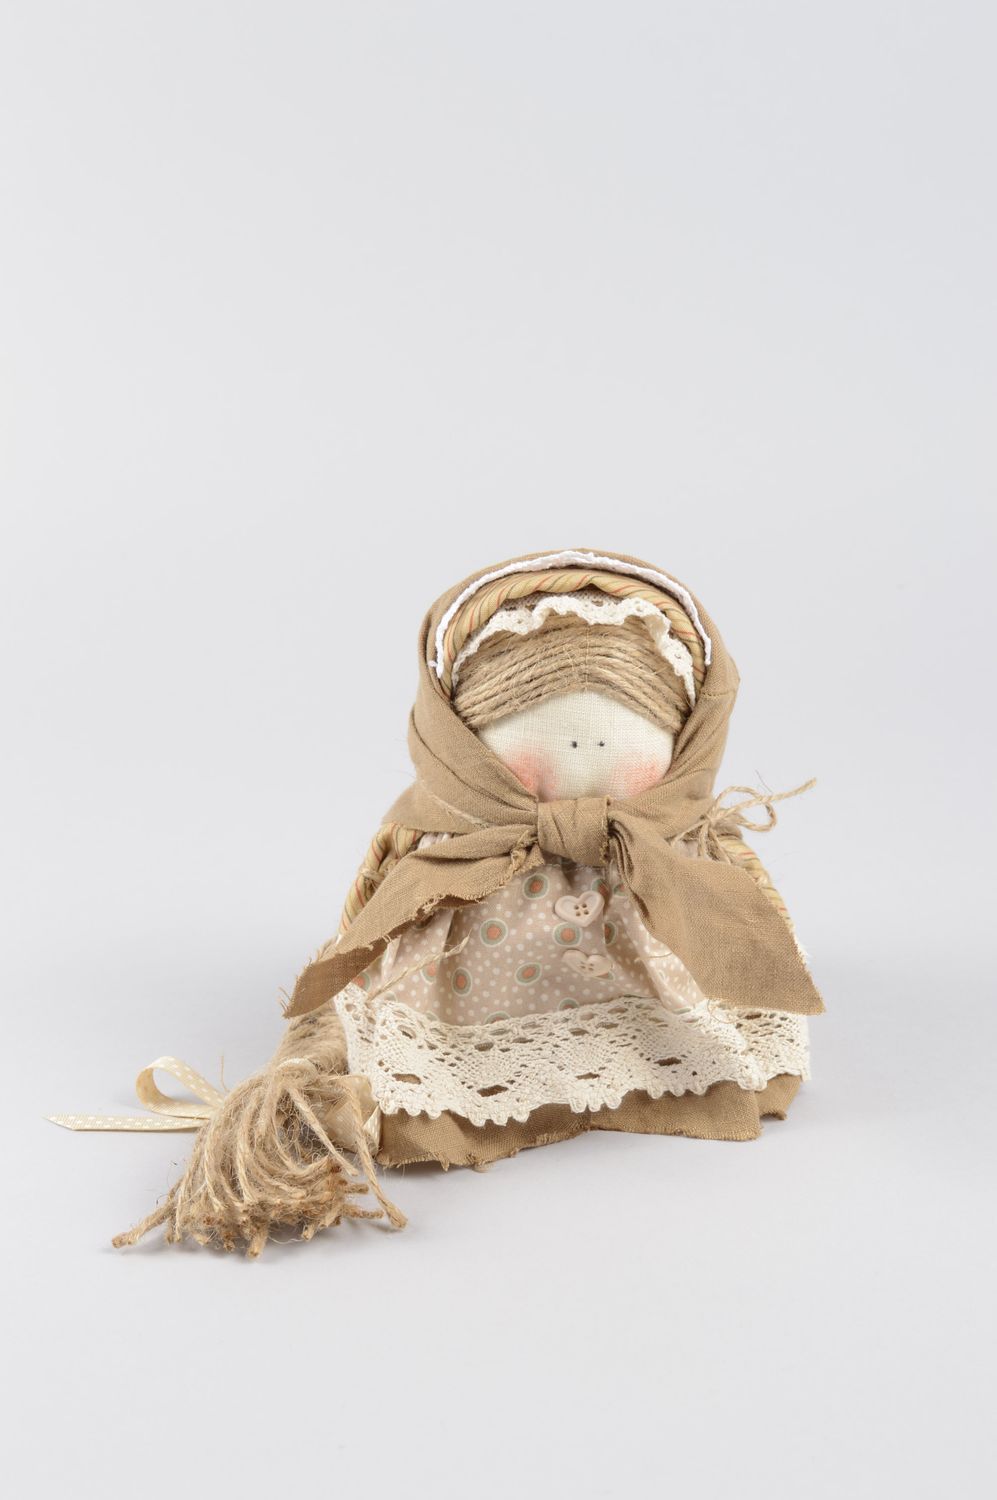 Handmade Korn Puppe originell Kinder Spielzeug Ethno Deko Puppe aus Stoff schön foto 1